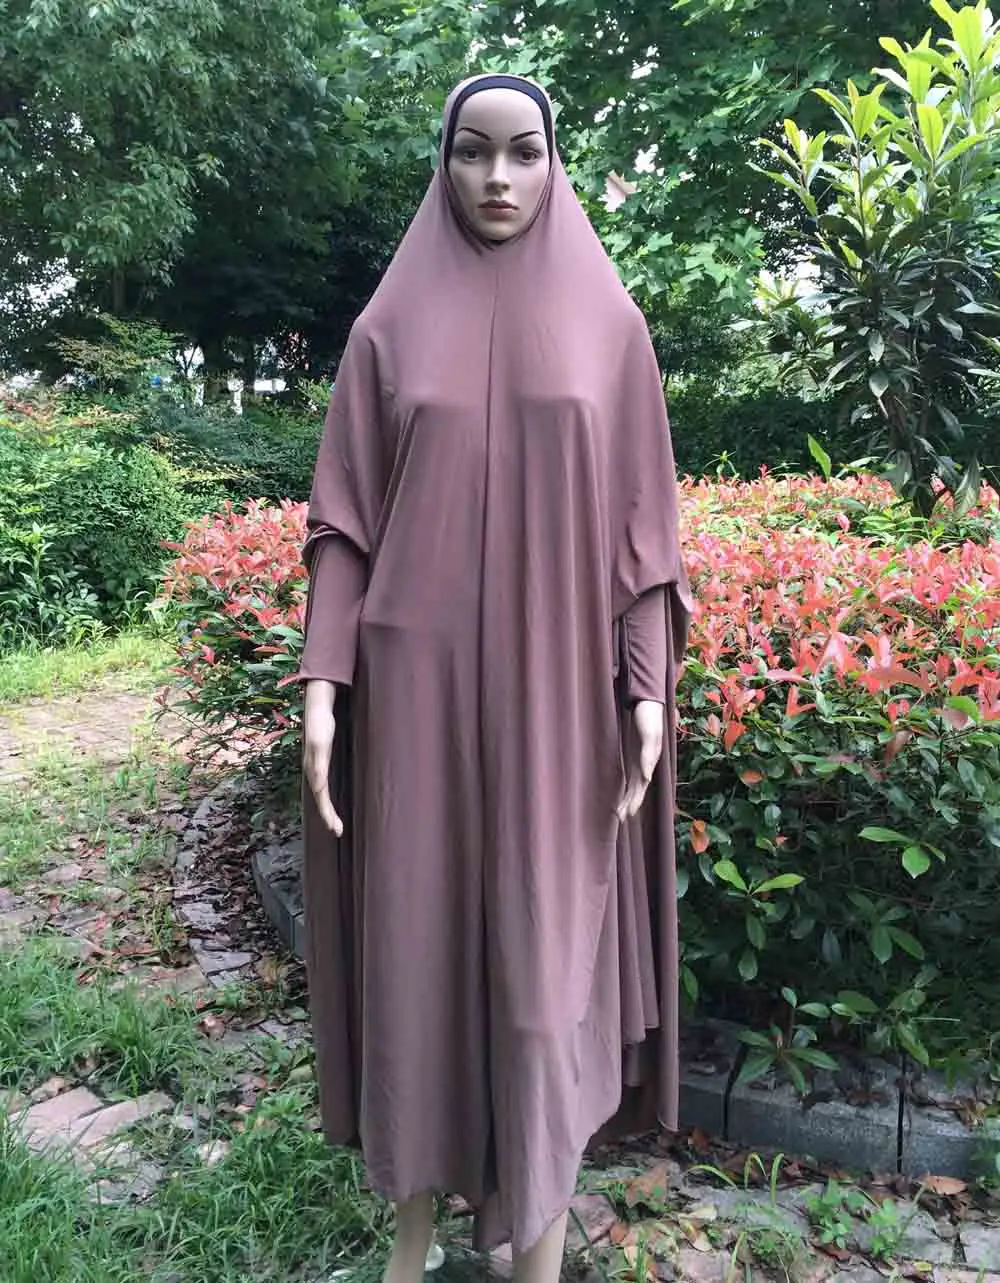 H1012 naujausią didelio dydžio, paprasto musulmonišką hidžabą,melstis, hijab kaip suknelė,greitas pristatymas,galite pasirinkti spalvas